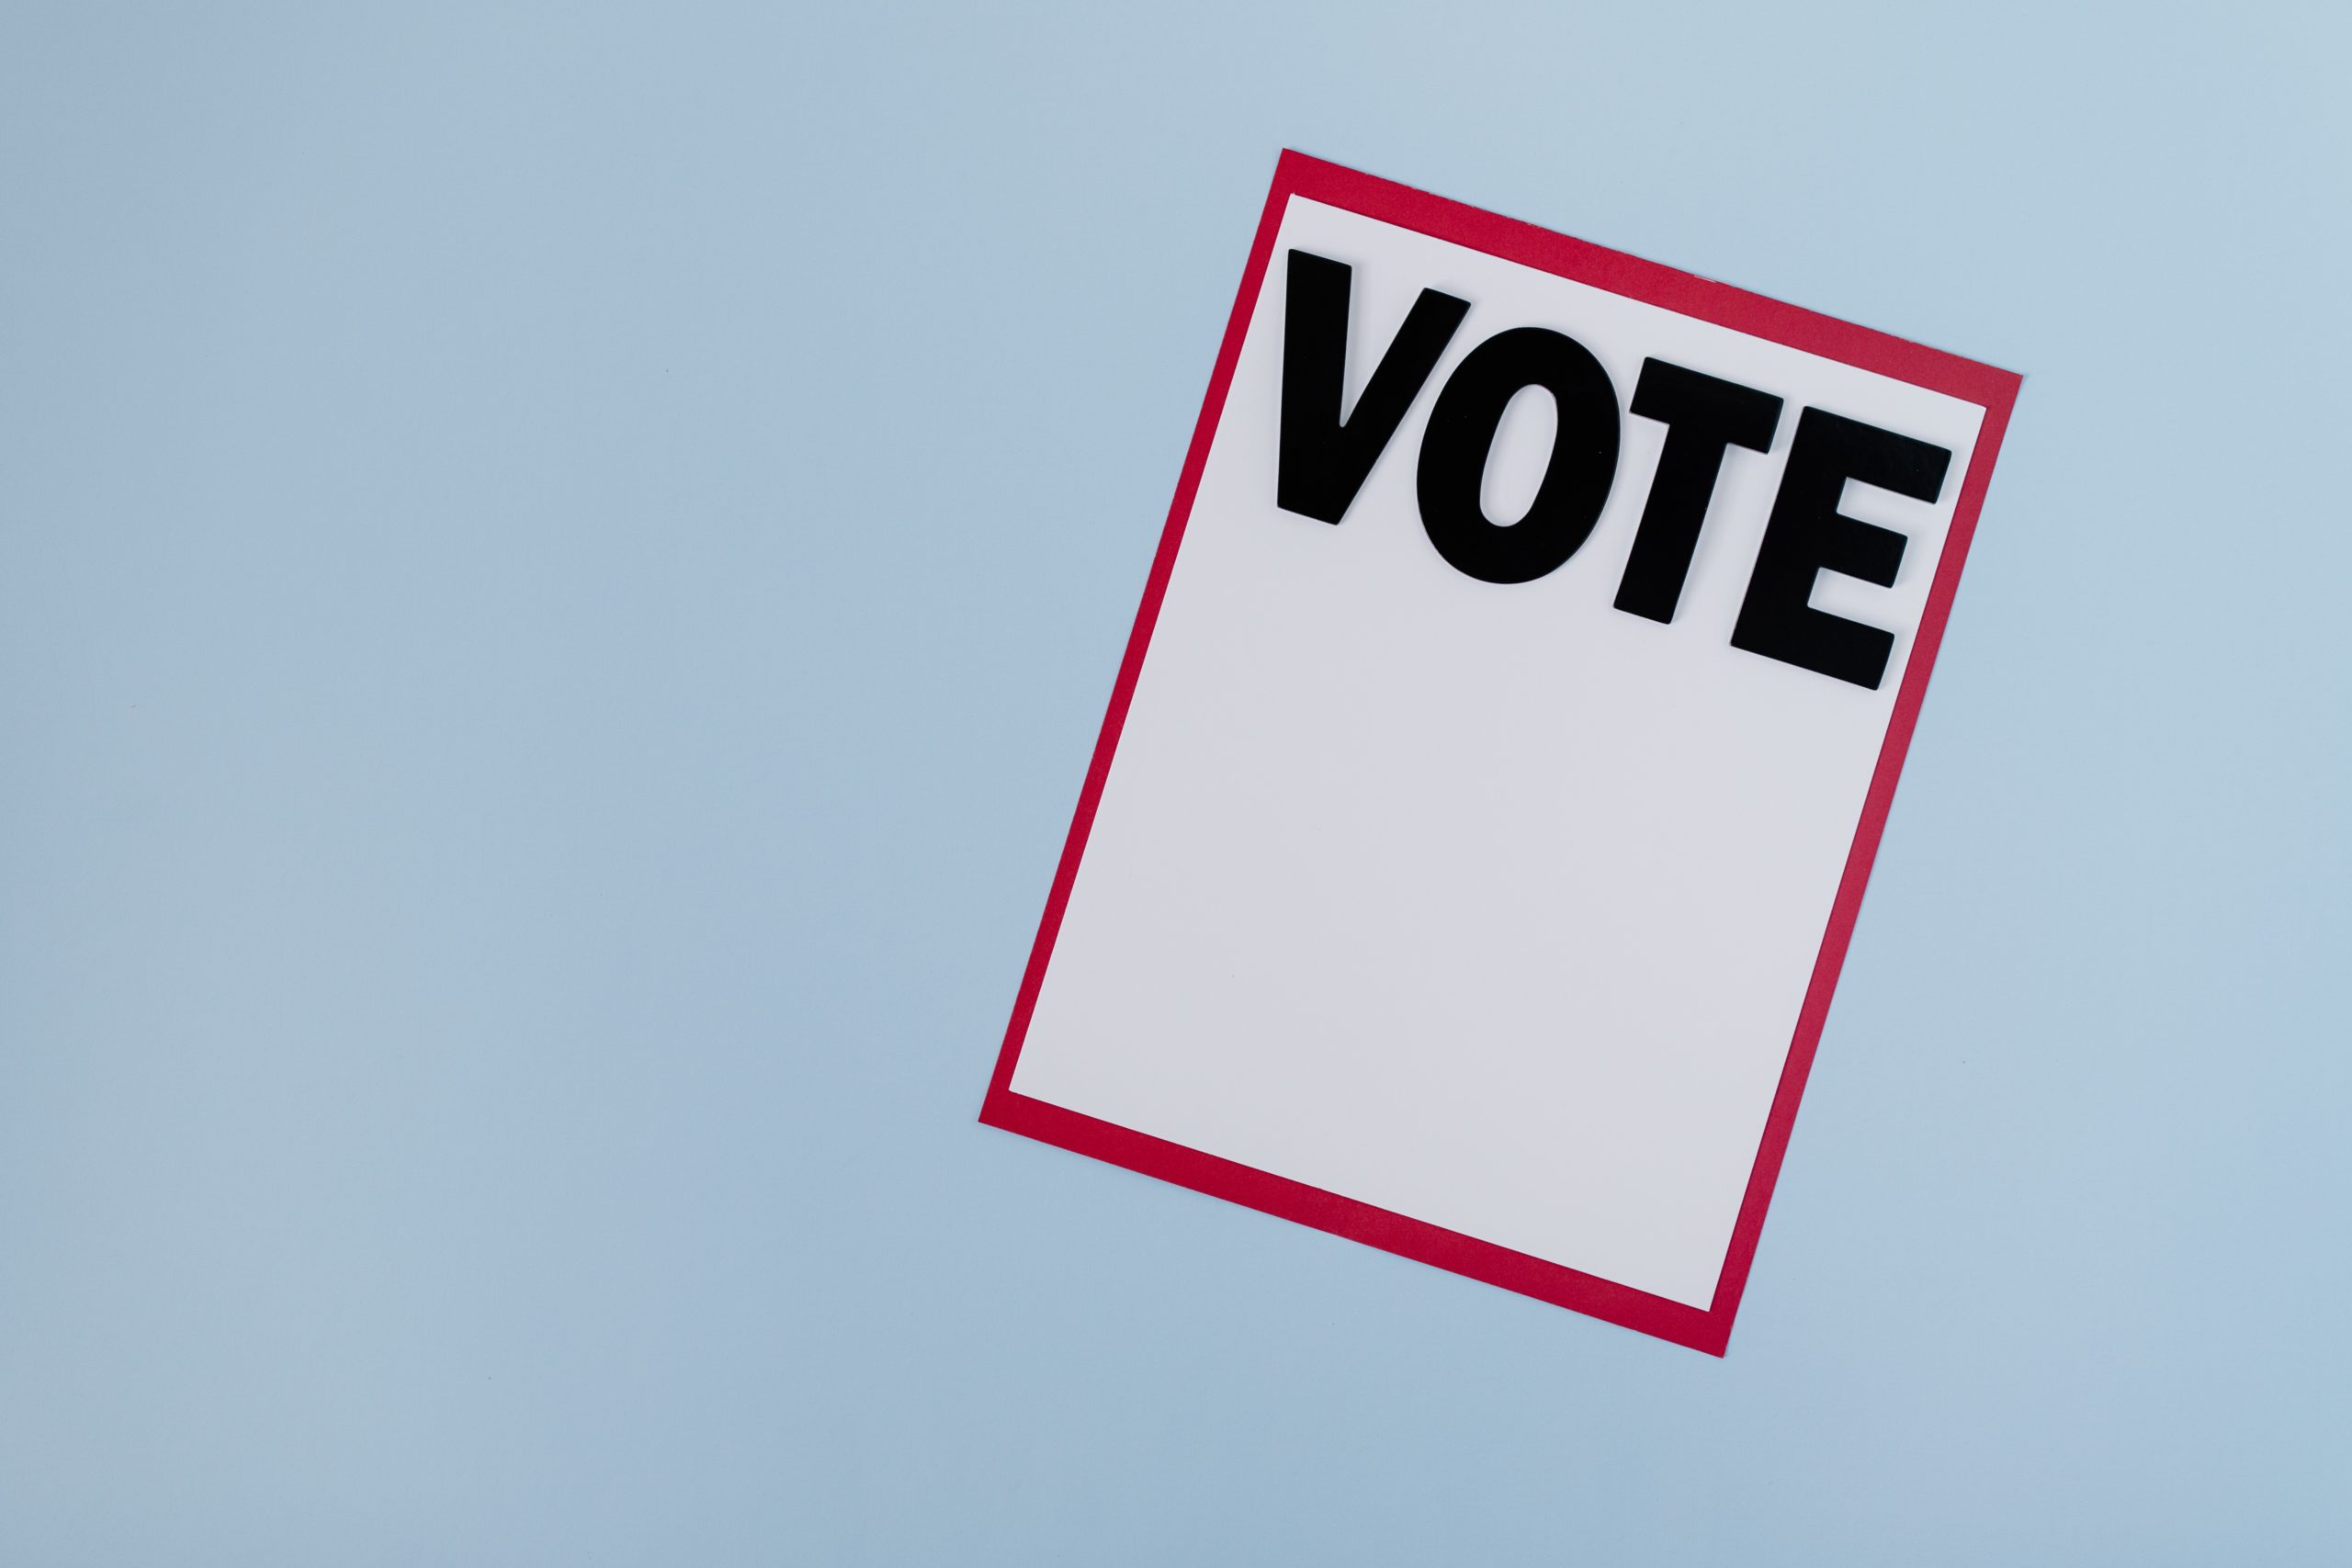 Κύπρος: Στους 561.033 οι πολίτες με δικαίωμα ψήφου στις εκλογές για την ανάδειξη νέου ΠτΔ